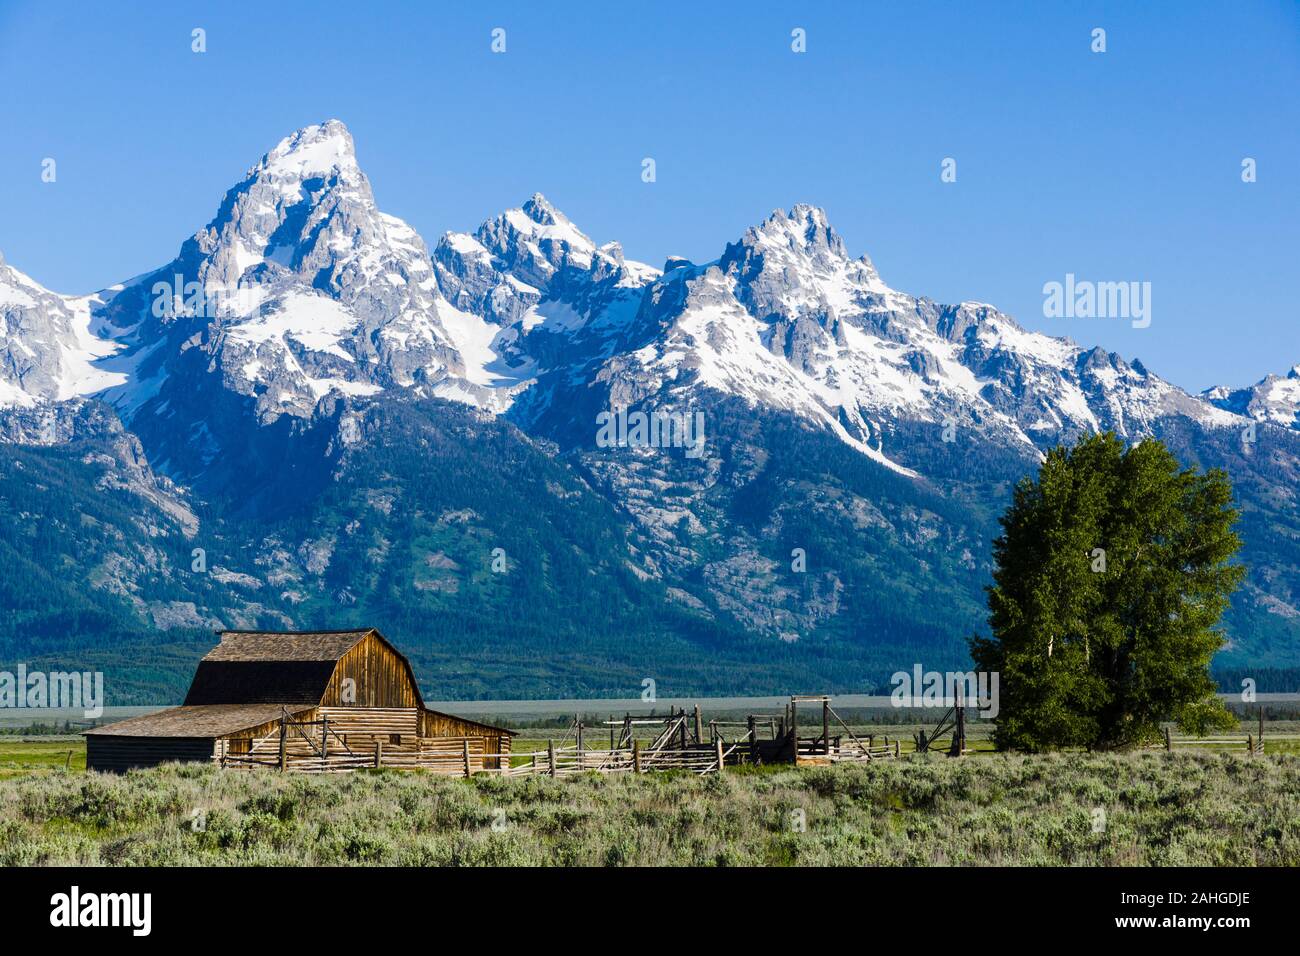 Mormon Row Historic District, Teton County, Wyoming, United States Stock Photo